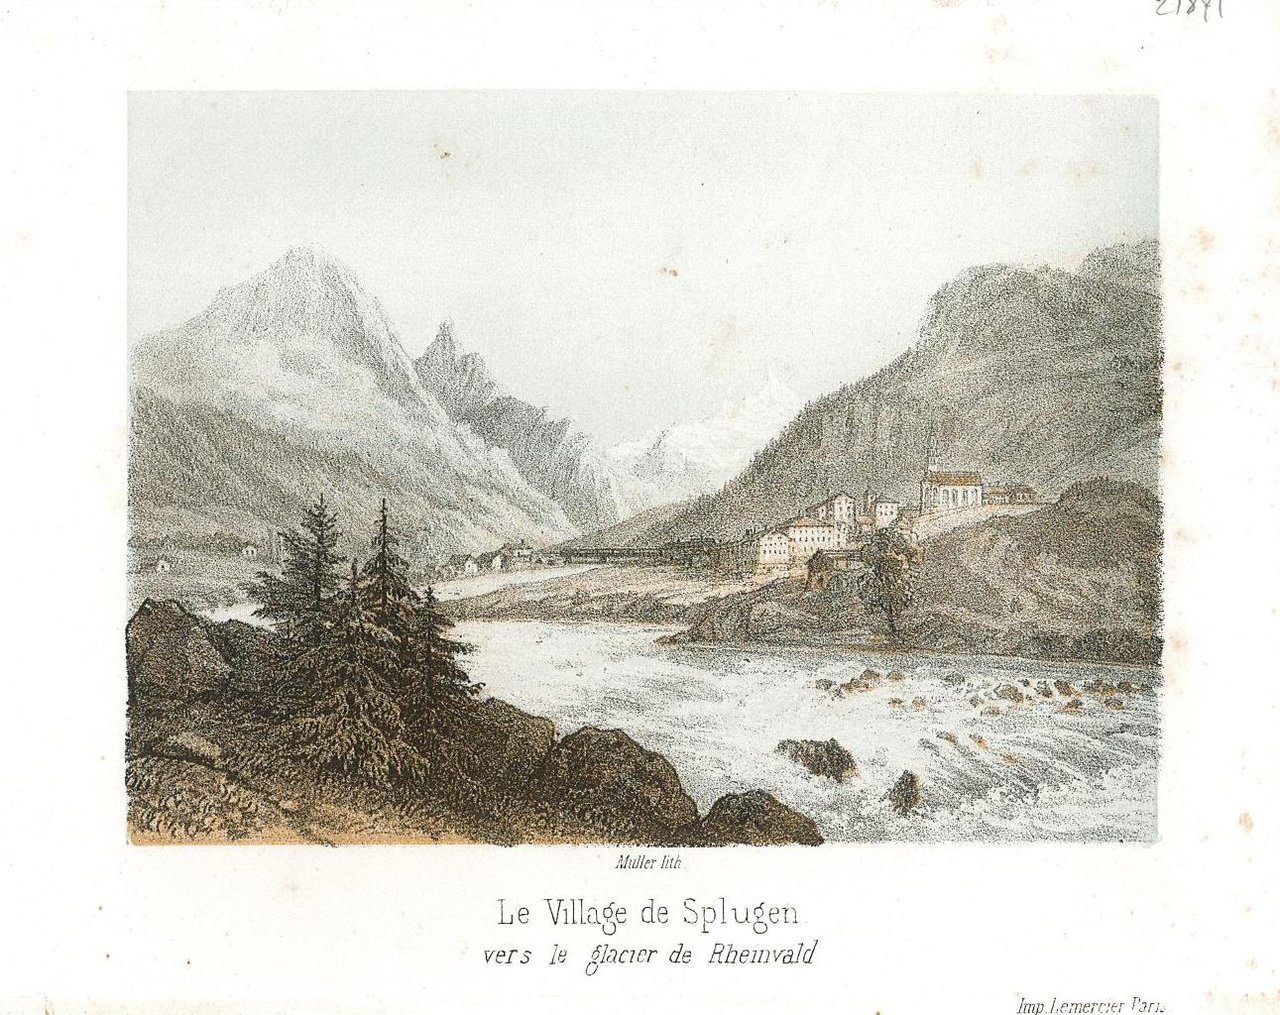 Le village de Splugen vers le glacier de Rheinwald